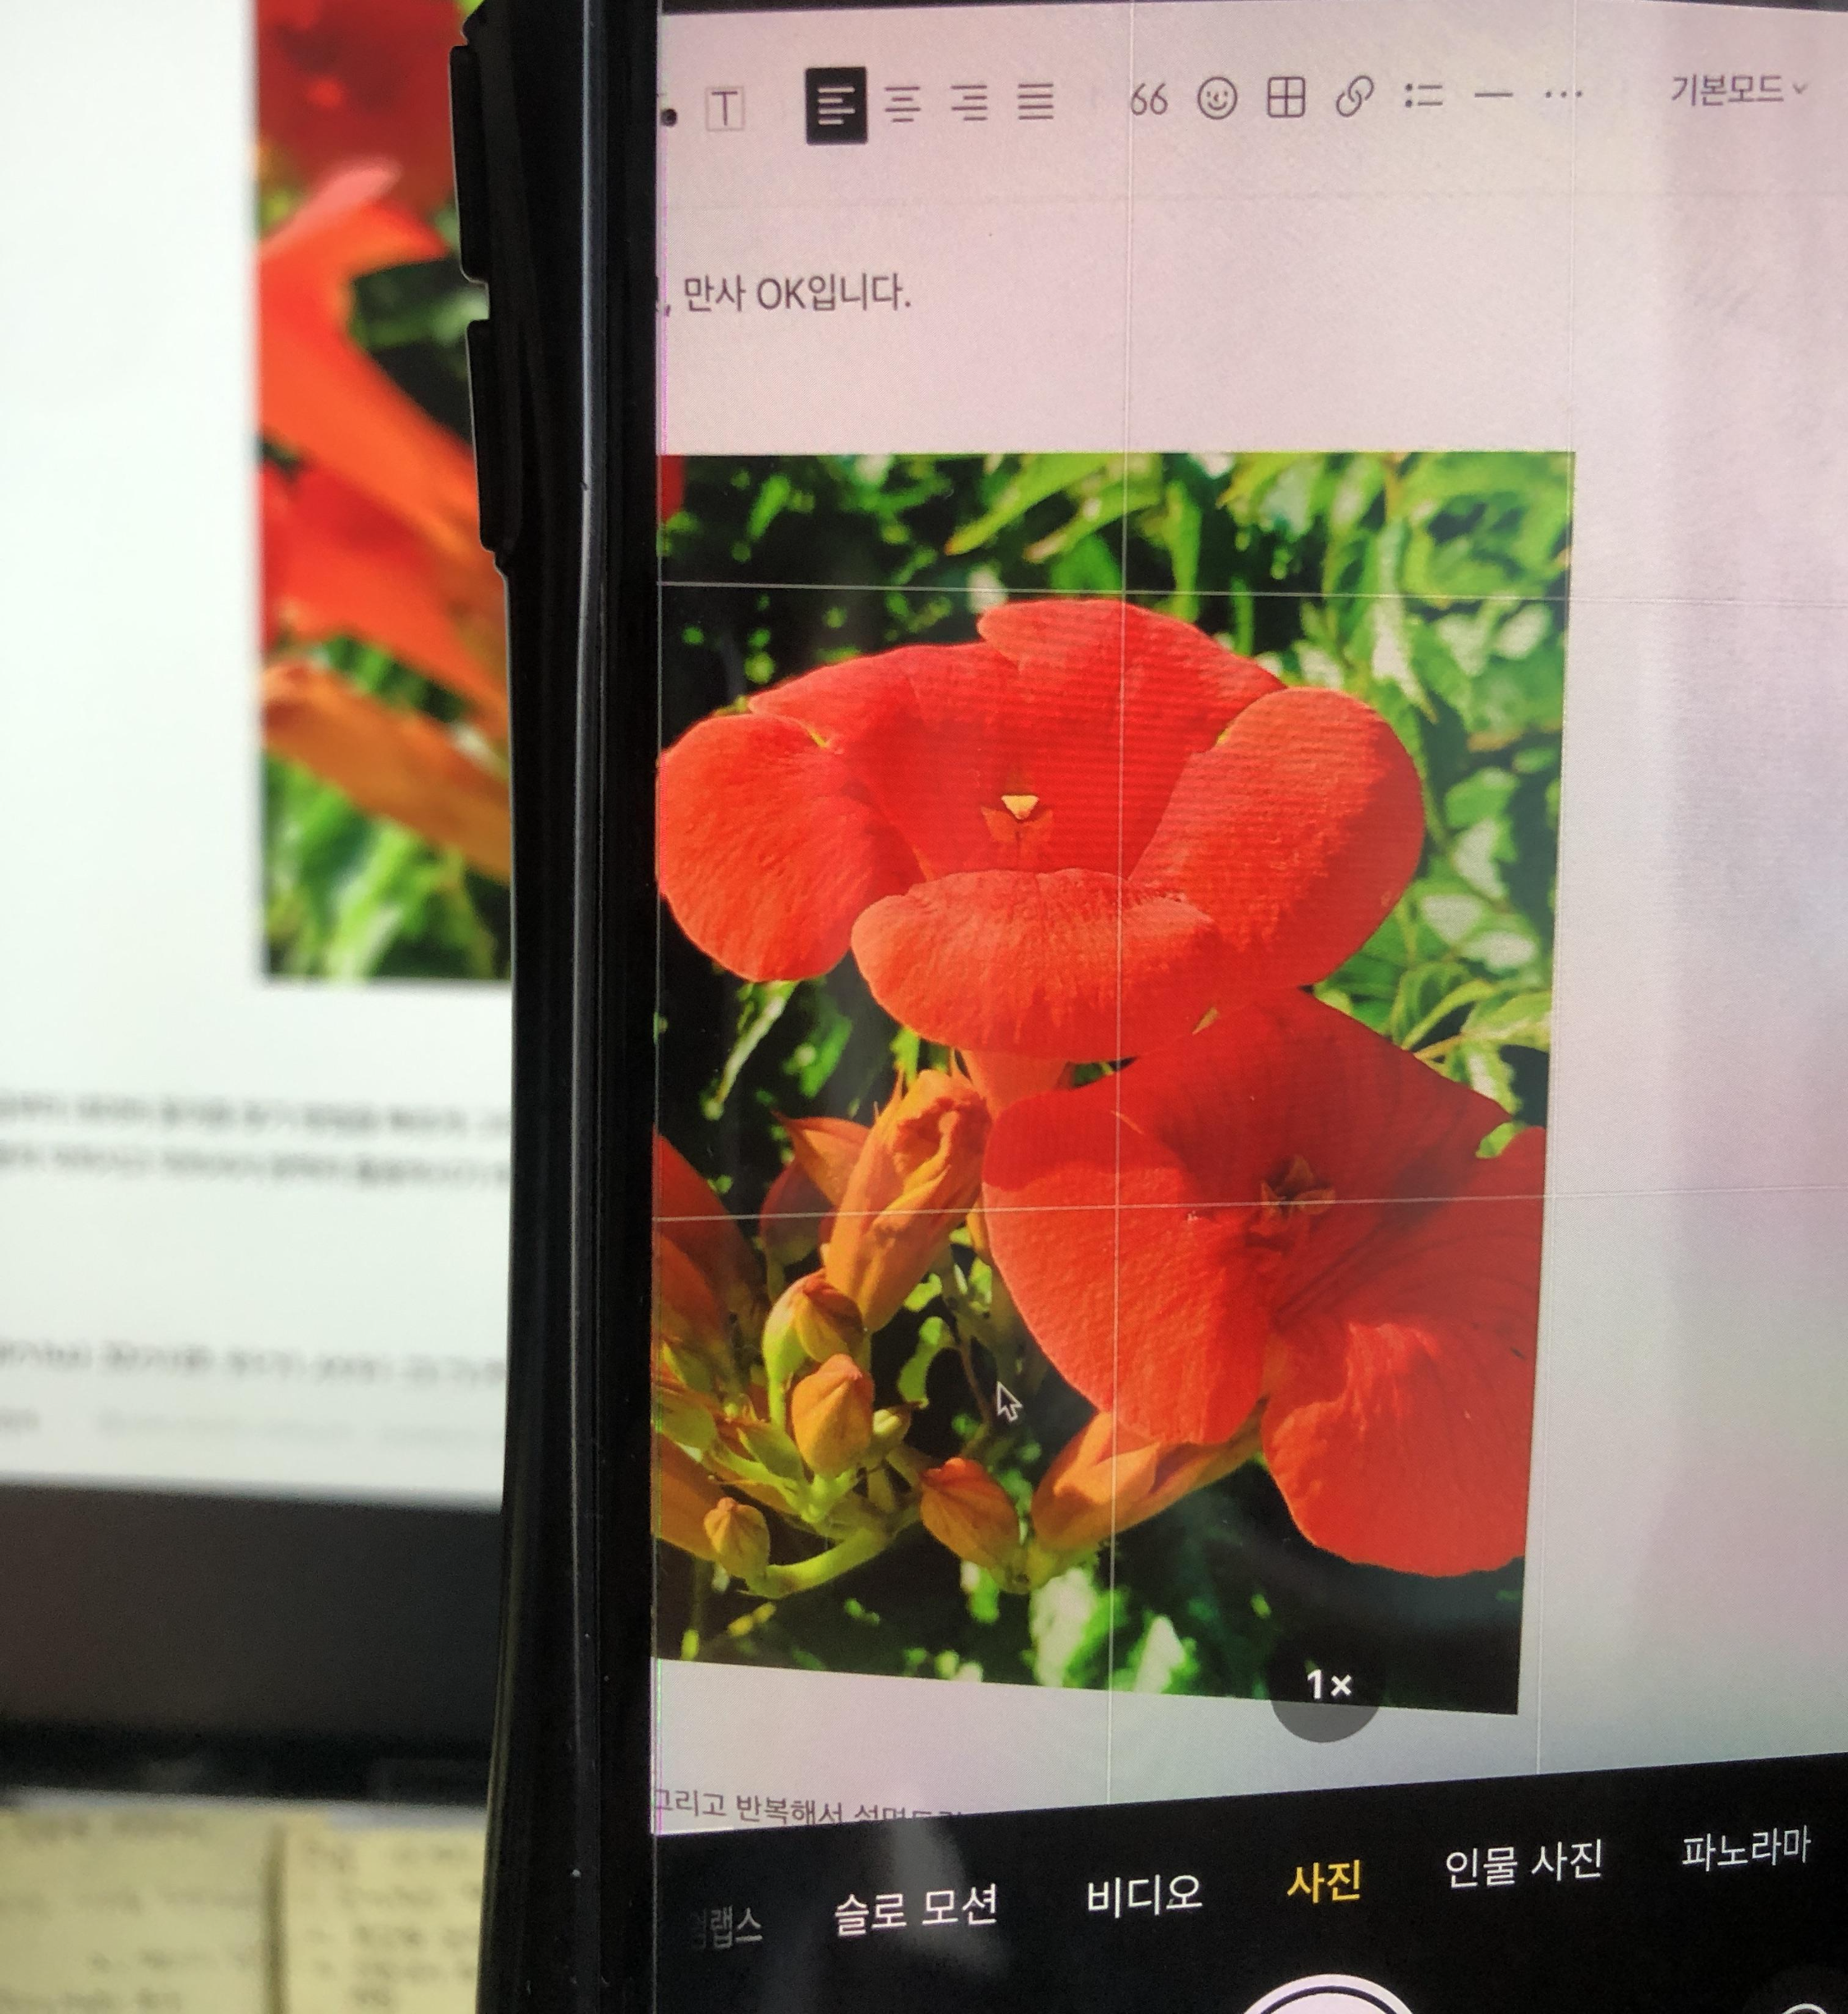 모니터에 있는 꽃이름을 알고 싶어서 스마트폰의 네이버 앱을 실행하여 찍는 사진